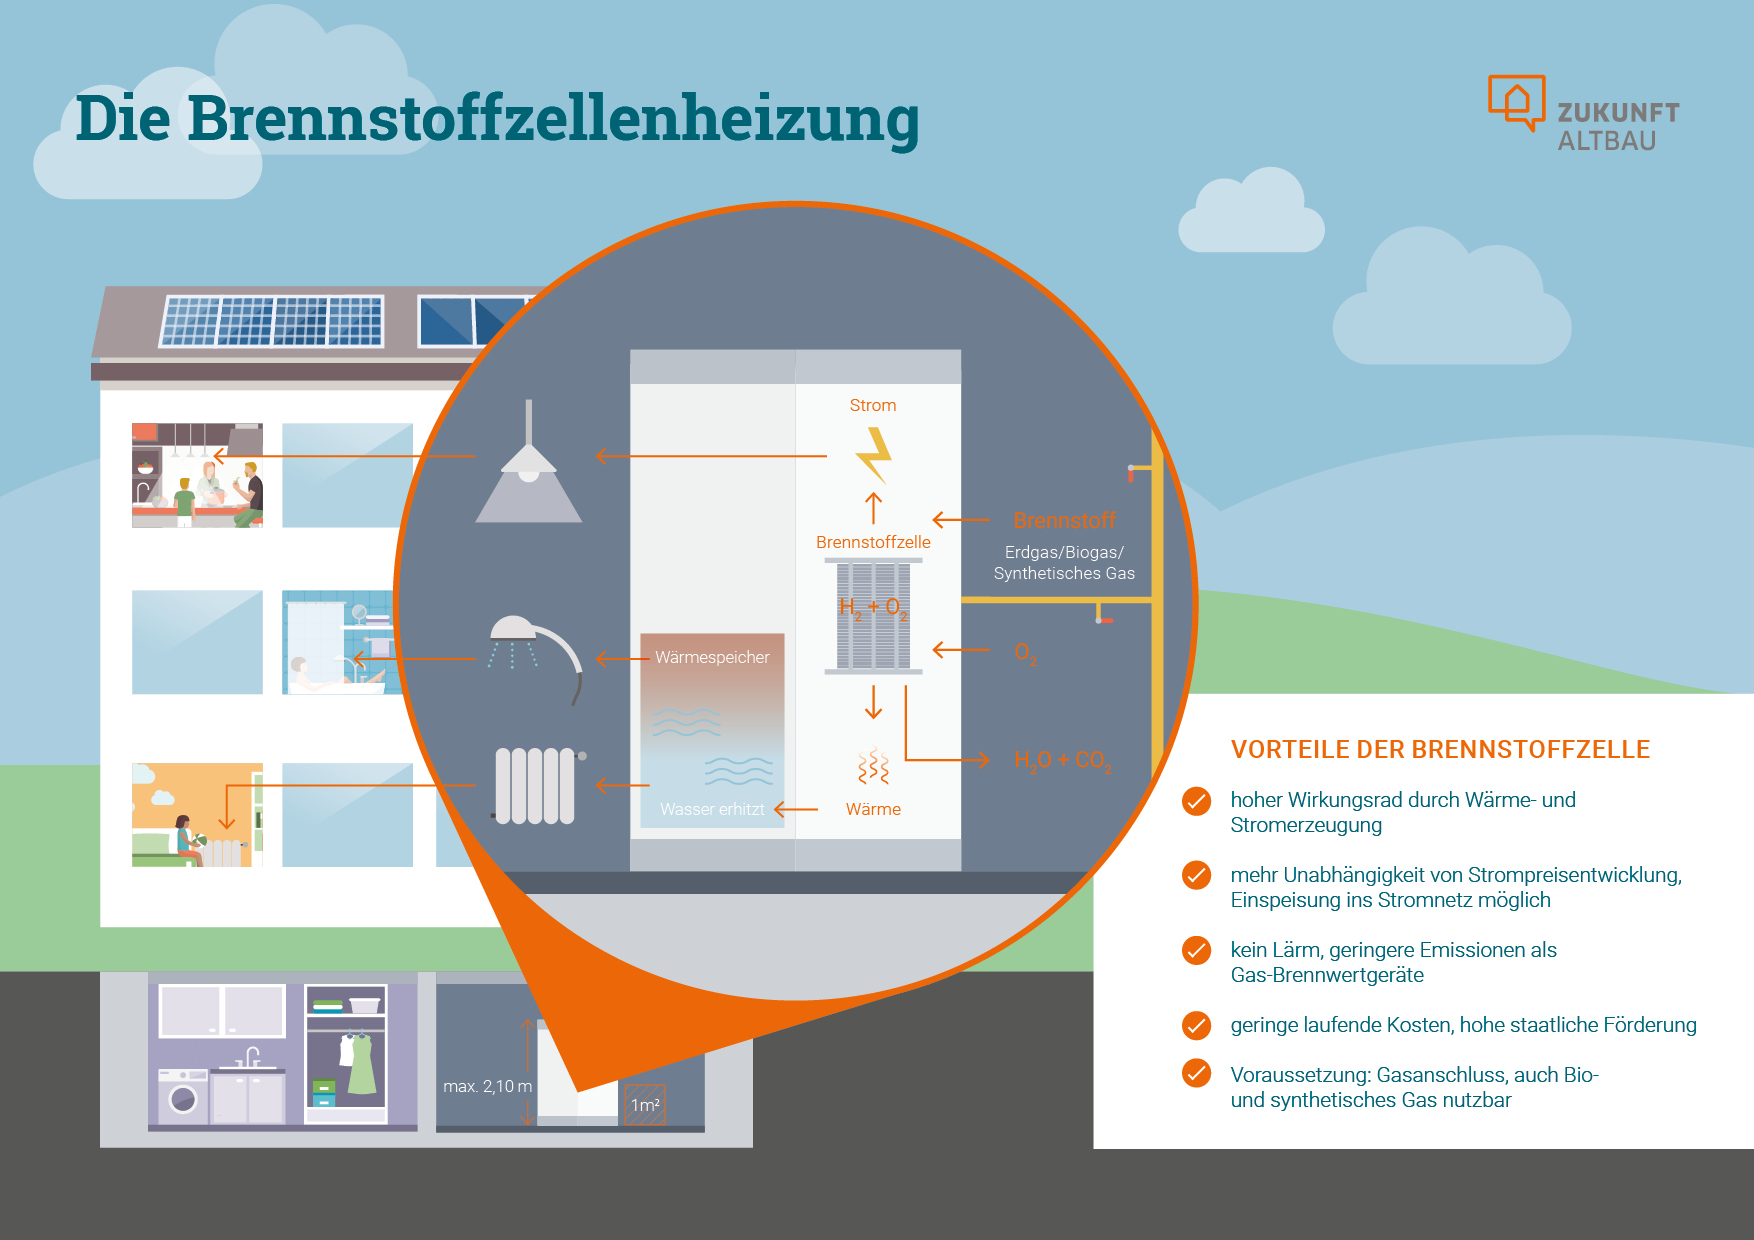 Die Grafik zeigt, wie eine Brennstoffzellenheizung funktioniert, wie sie in einem Wohngebäude zum Einsatz kommt und wie sie finanziert werden kann.